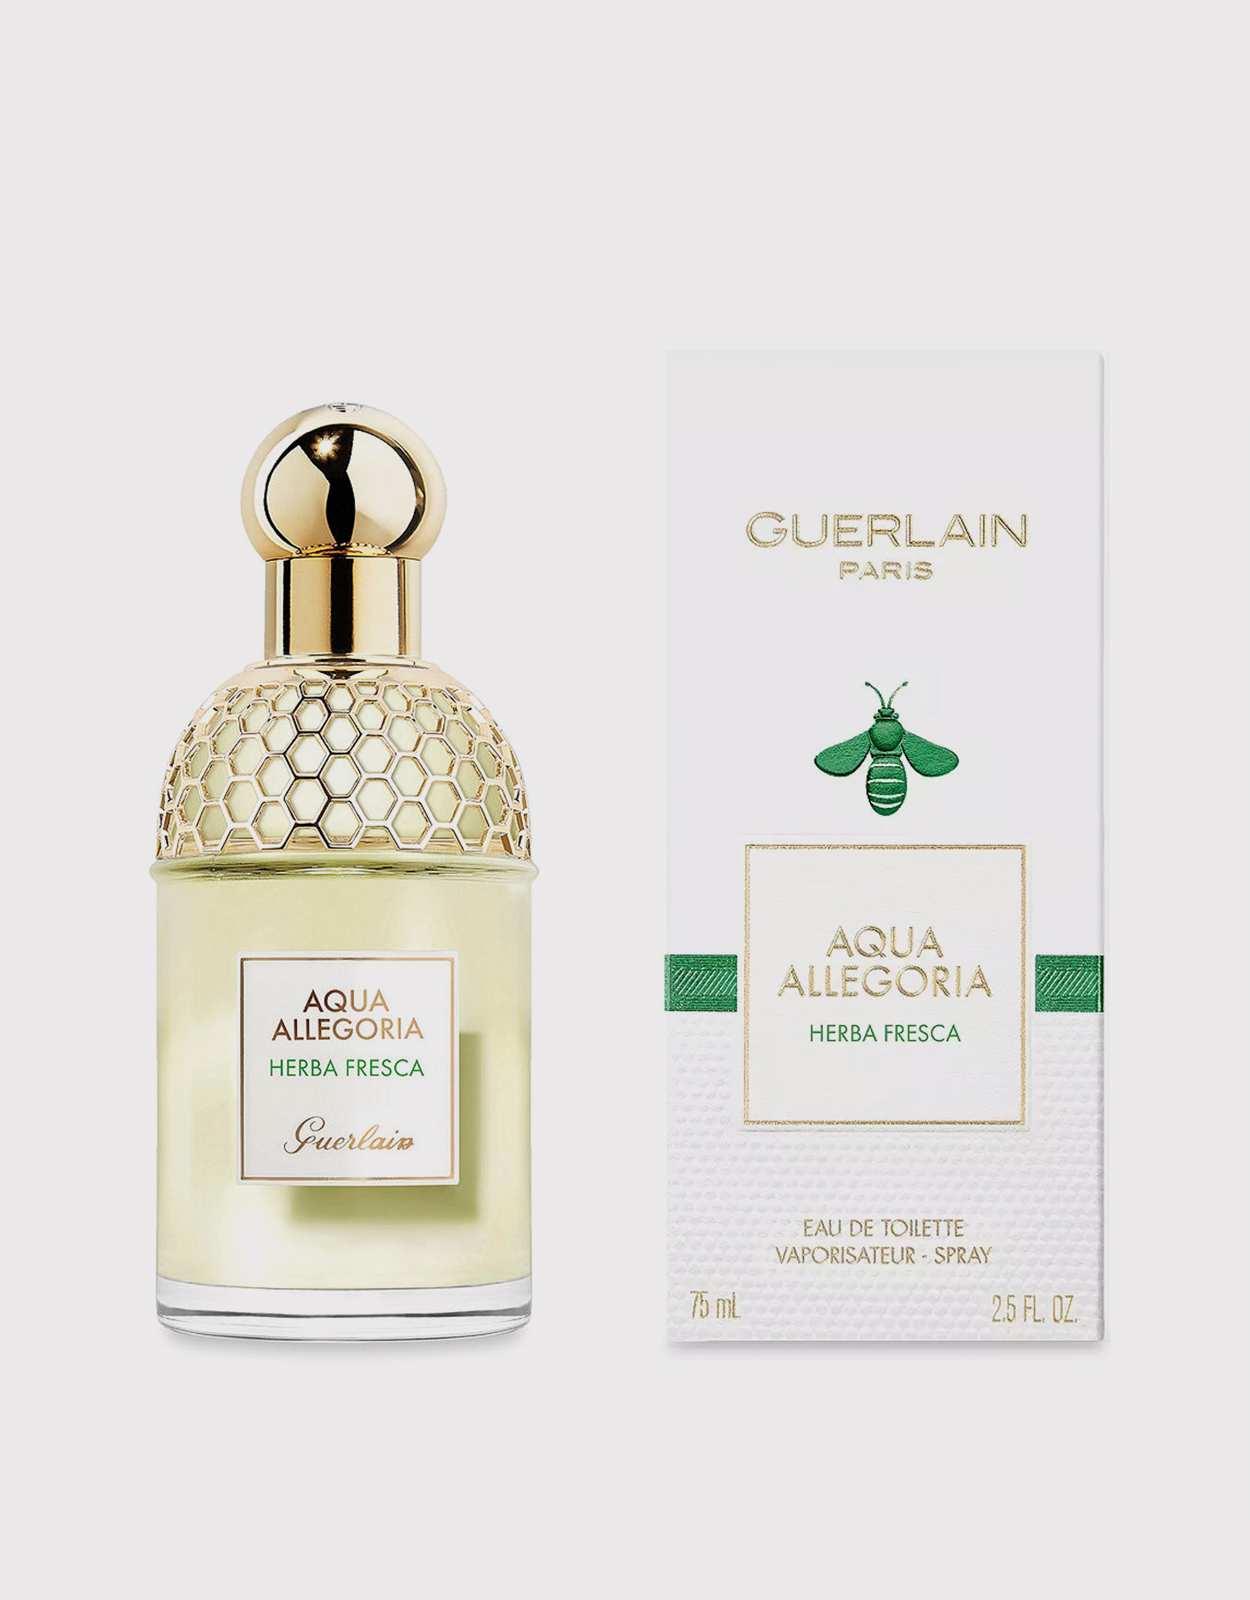 Guerlain Aqua Allegoria Herba Fresca For Women Eau De Toilette 75ml  (Fragrance,Perfume,Women) IFCHIC.COM